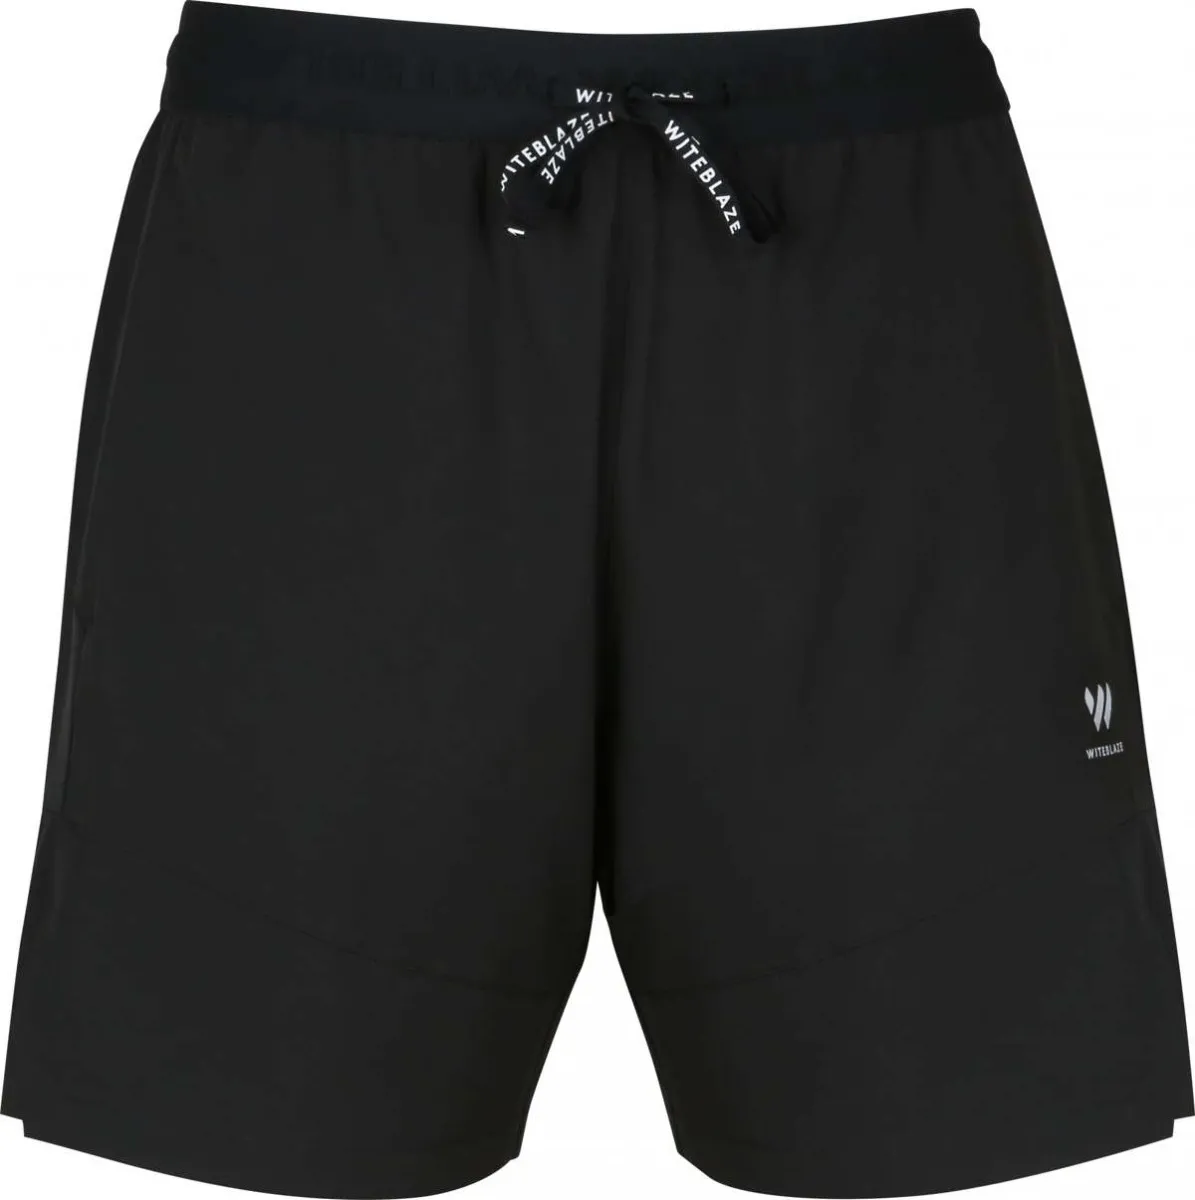 WITEBLAZE men s shorts Scotty 2in1 shorts black